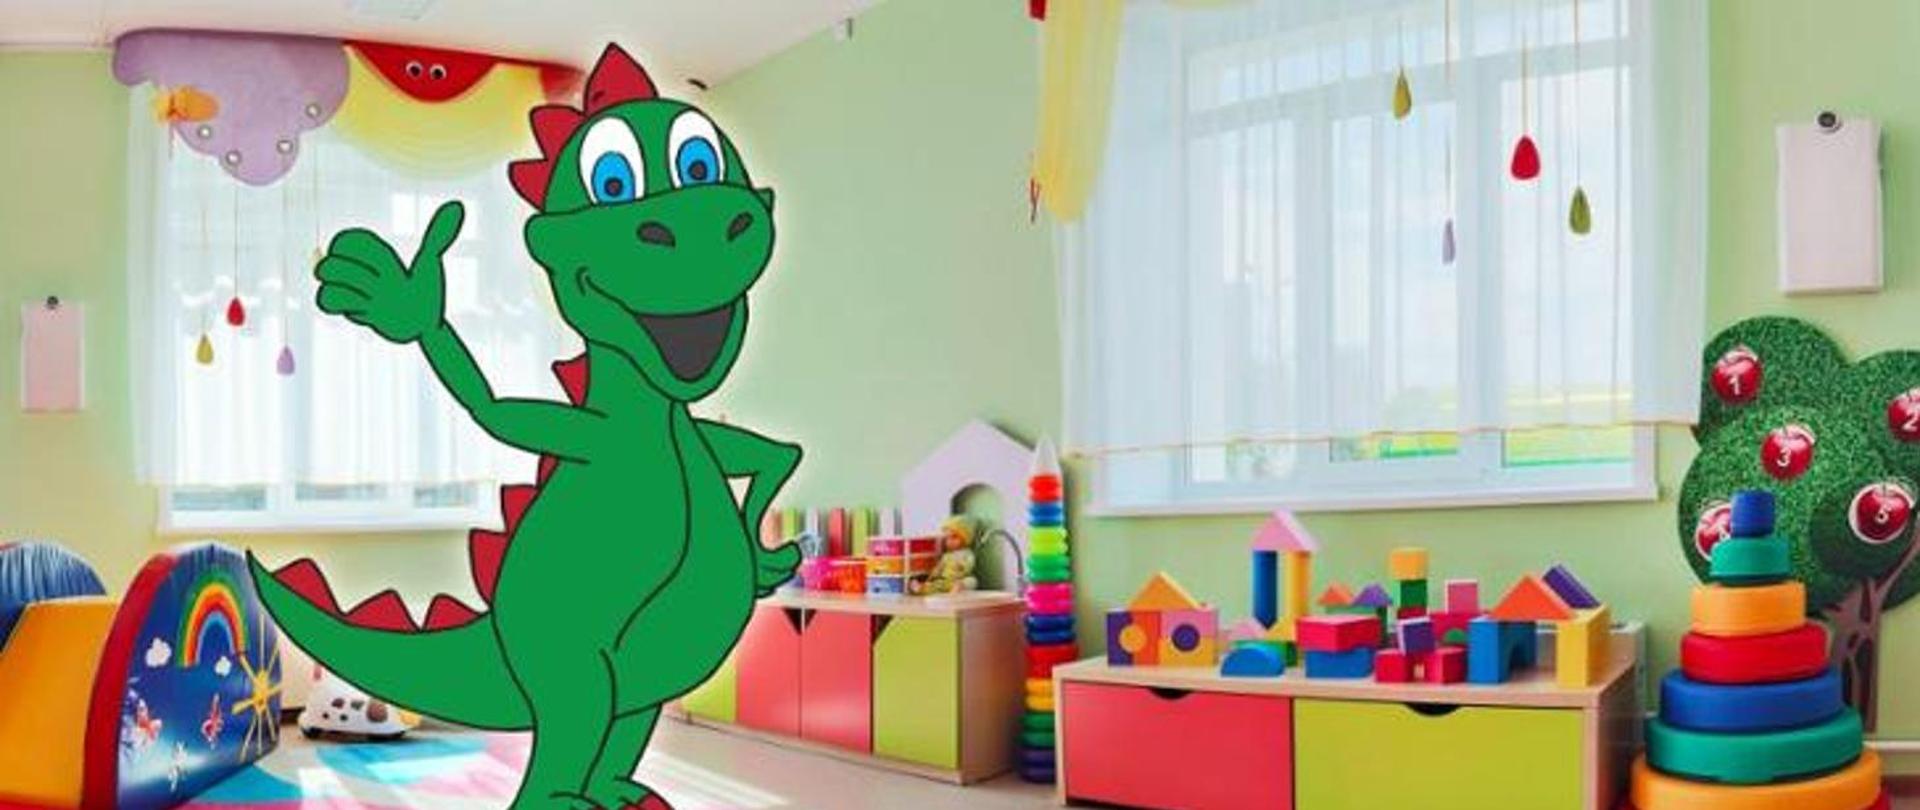 Baner programu "Czyste powietrze wokół nas" - Główny bohater programu zielony smok Dinuś w sali przedszkolnej, z mnóstwem różnych kolorowych zabawek.